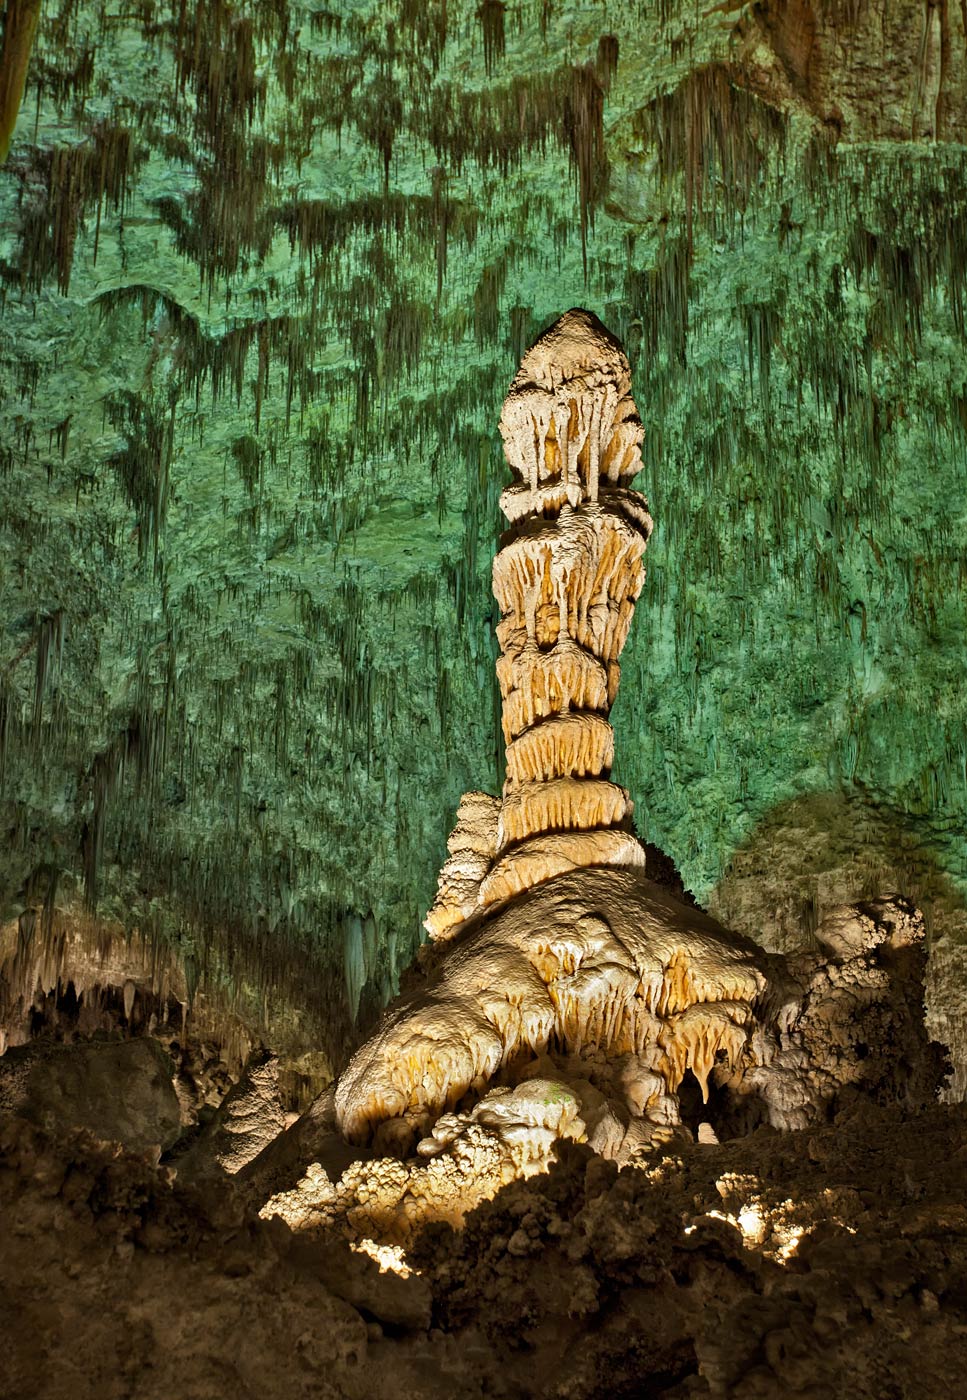 Carlsbad-Caverns-National-Park-ABP-Torchlight.jpg